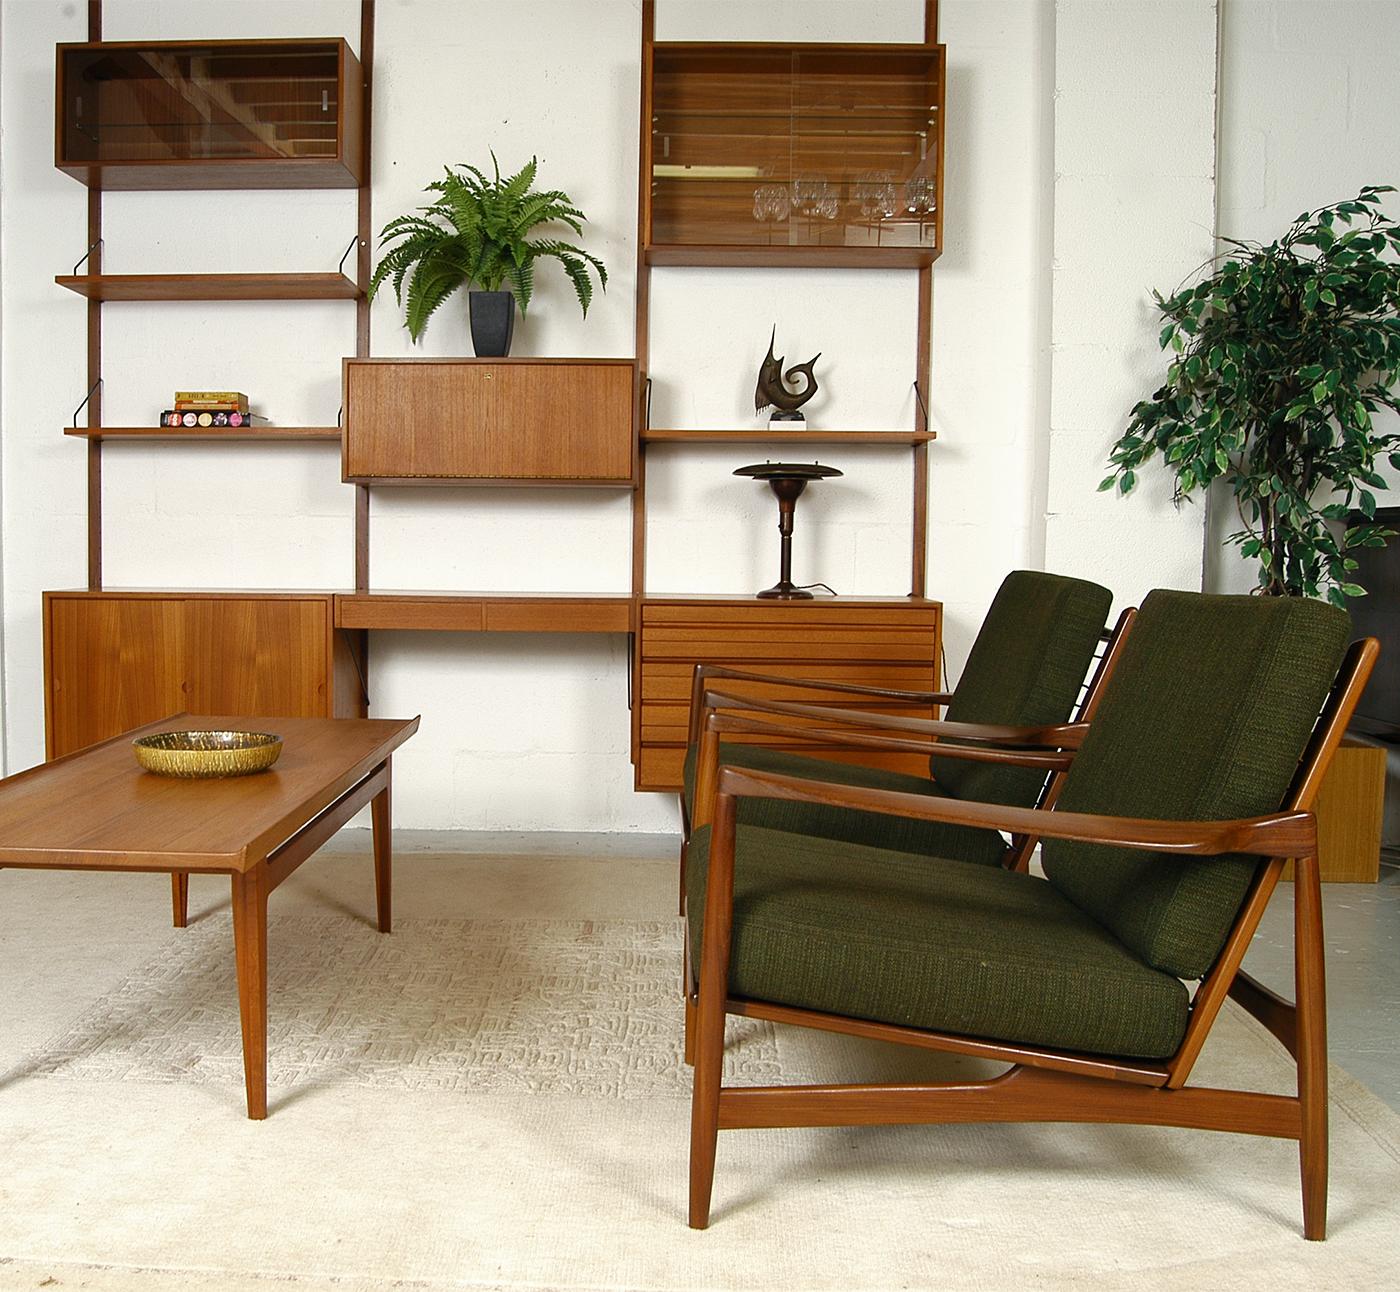 Pour répondre à la demande croissante de meubles importés de Scandinavie des années 1960:: la société britannique G-Plan a engagé le designer danois Ib Kofod-Larsen pour créer une gamme entièrement nouvelle et exclusive - la 